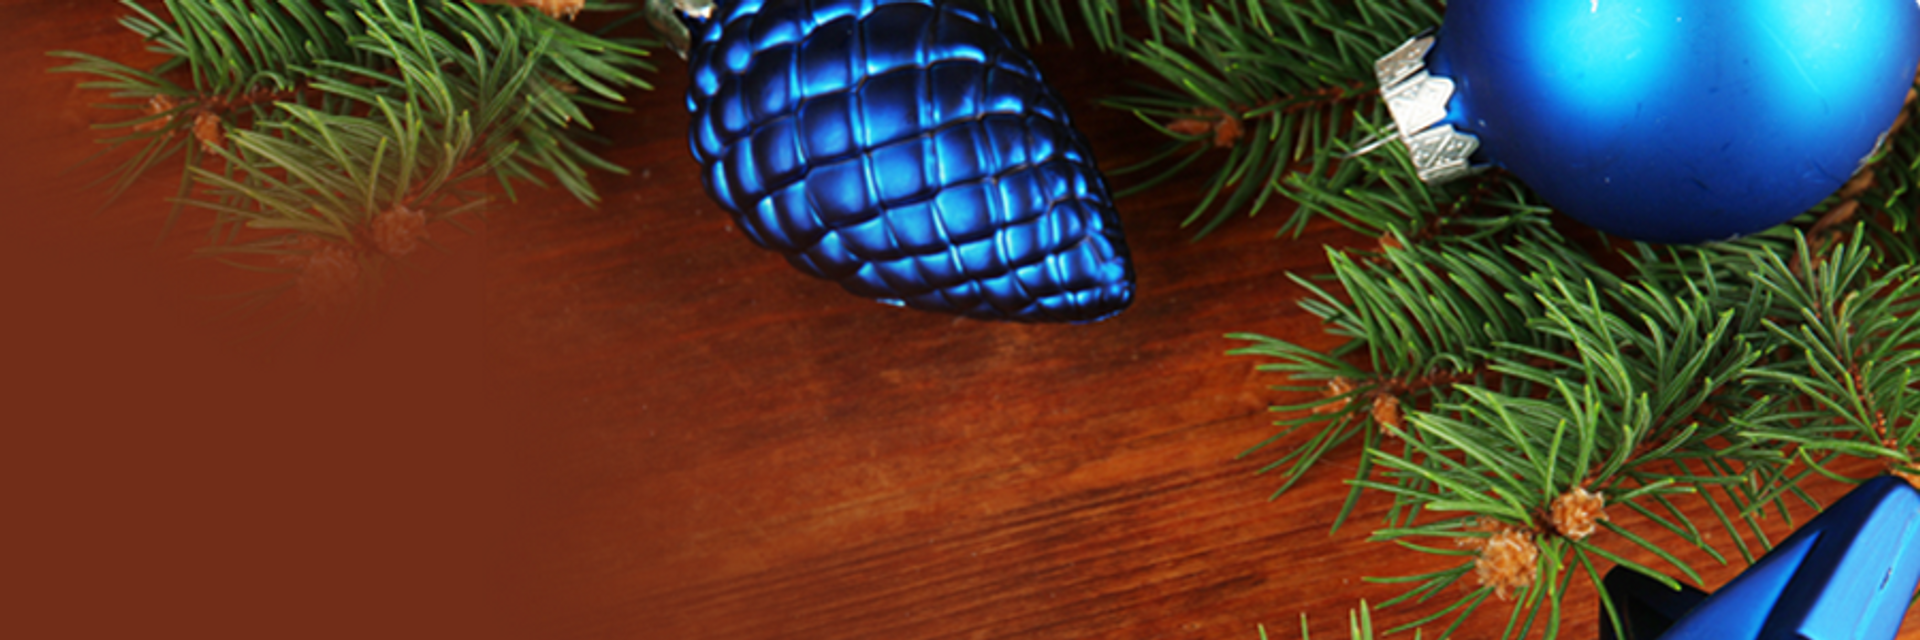 Christmas Tree Ornament Ice Cube Tray